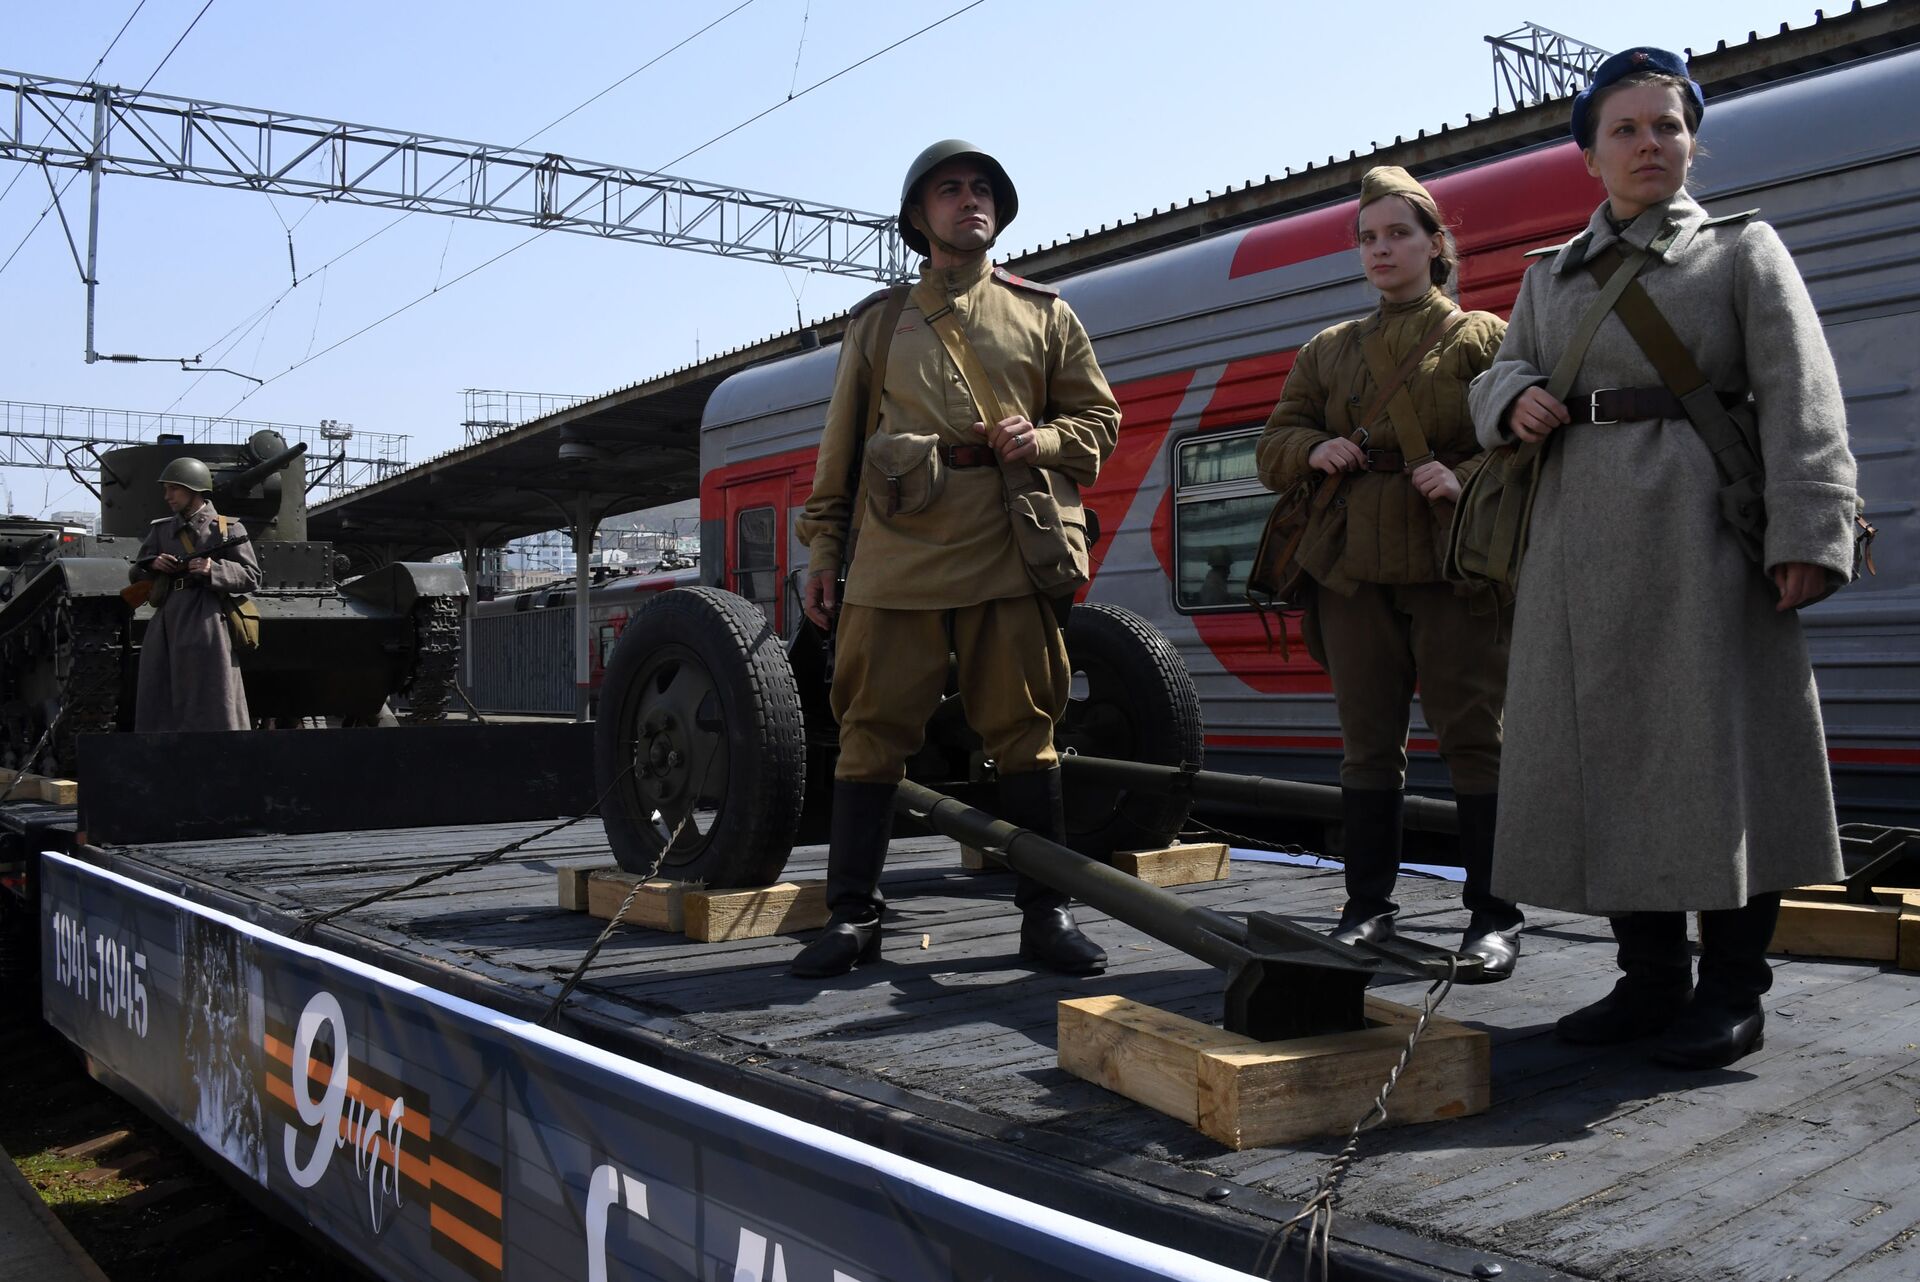 Участники исторической реконструкции в форме времен Великой Отечественной войны во время прибытия поезда  - Sputnik Беларусь, 1920, 29.06.2021